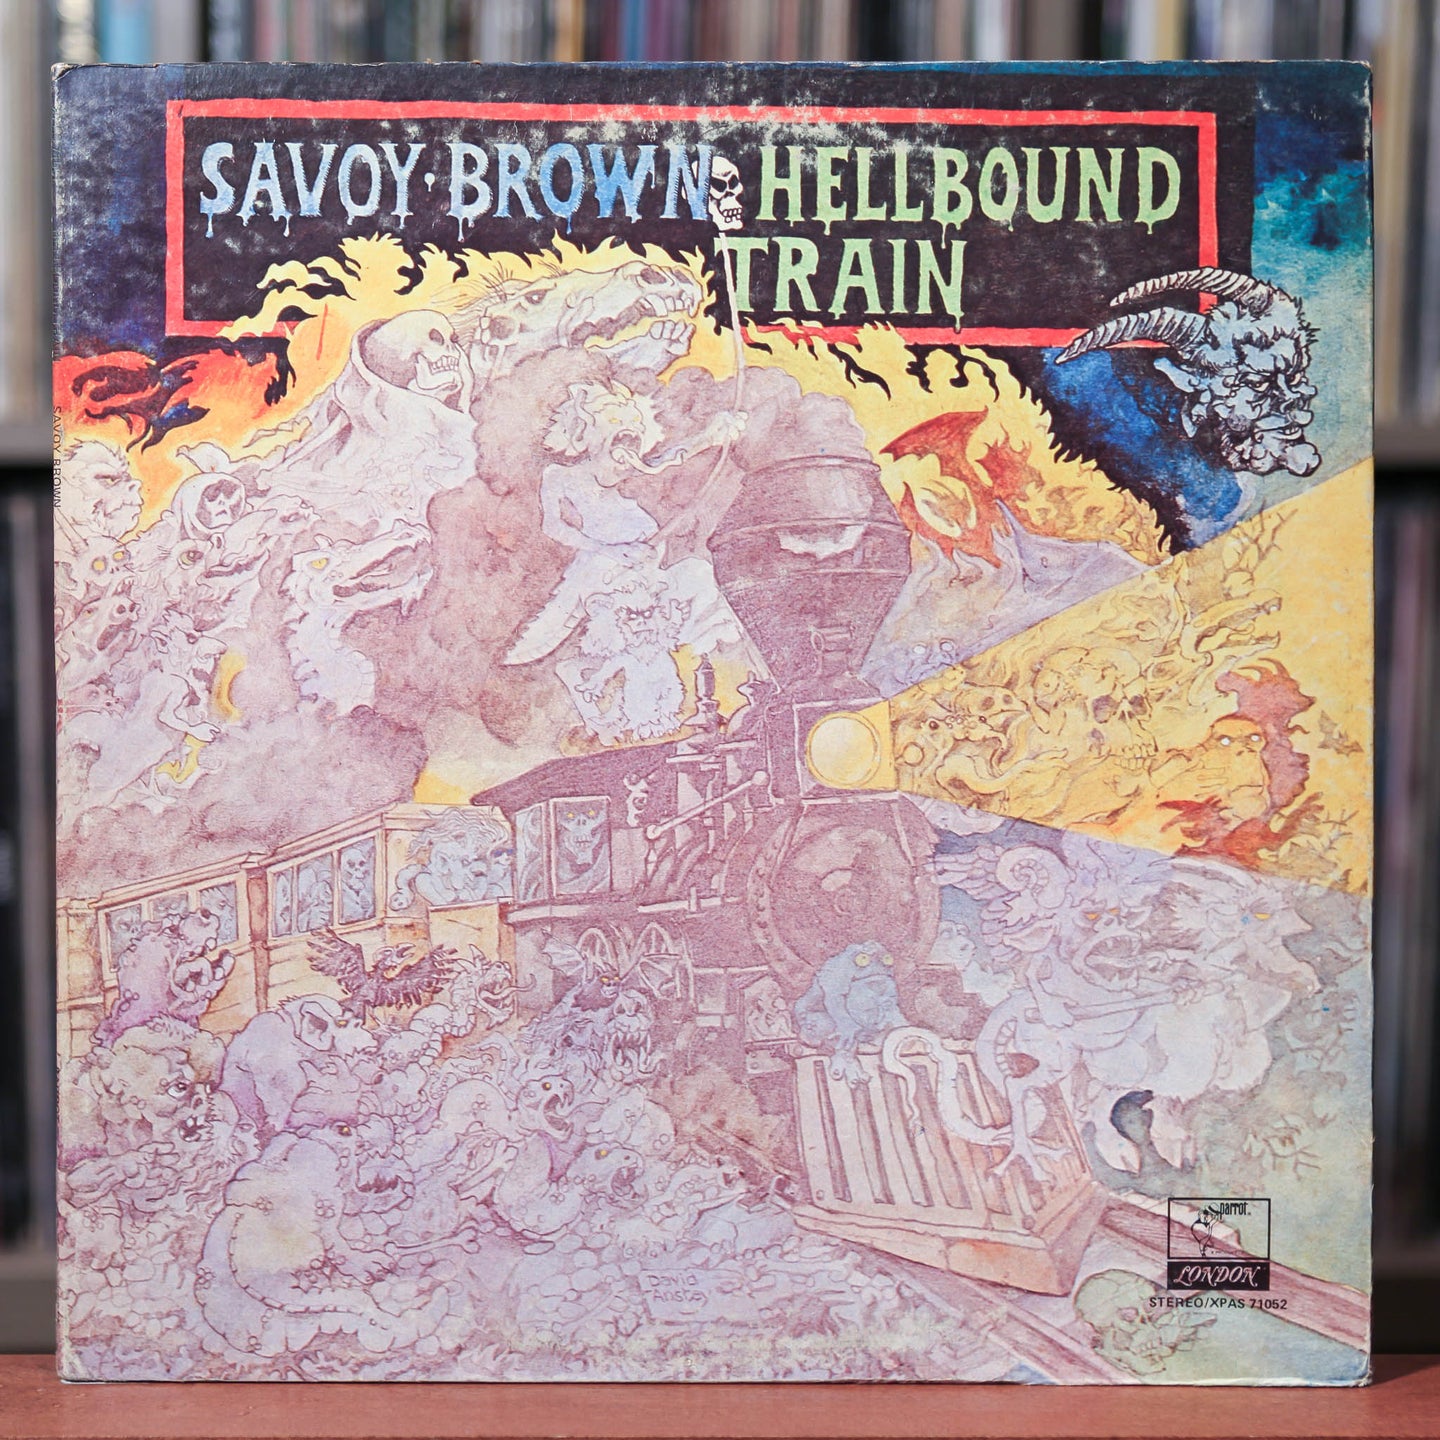 Savoy Brown - Hellbound Train - 1972 Parrot, VG+/VG